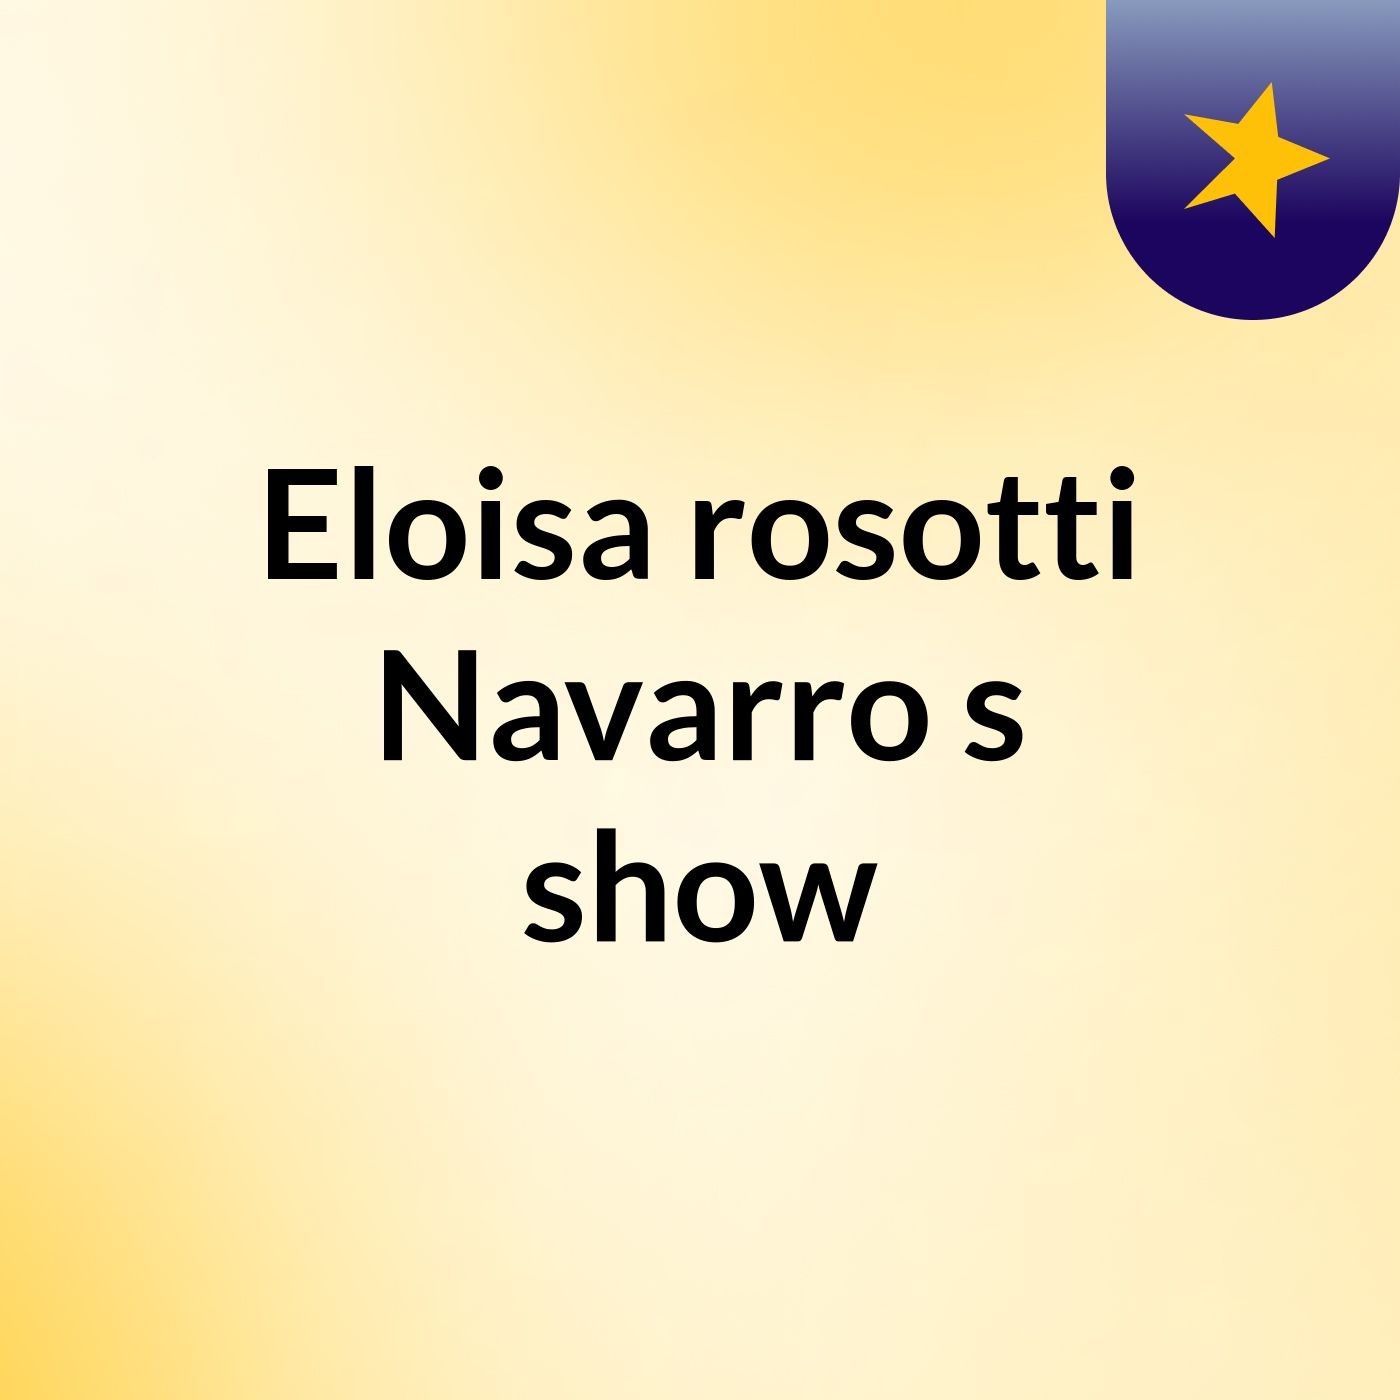 Eloisa rosotti Navarro's show